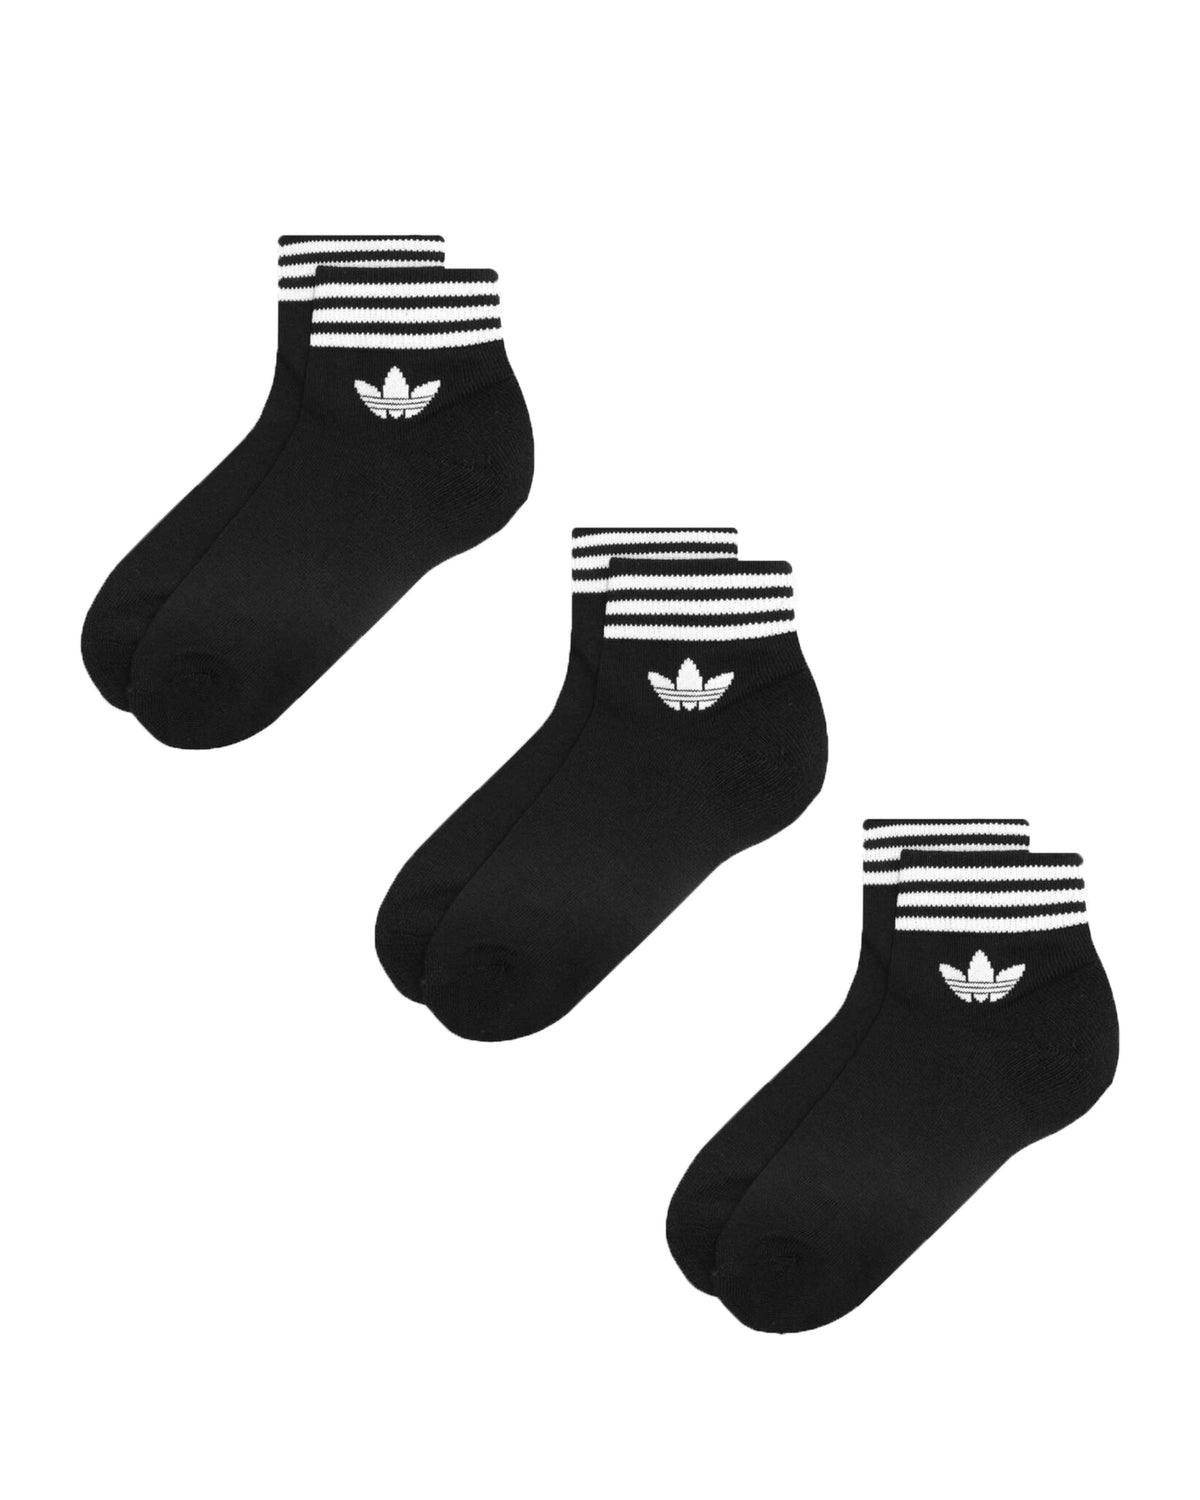 Socks Adidas tref ank trefoil White